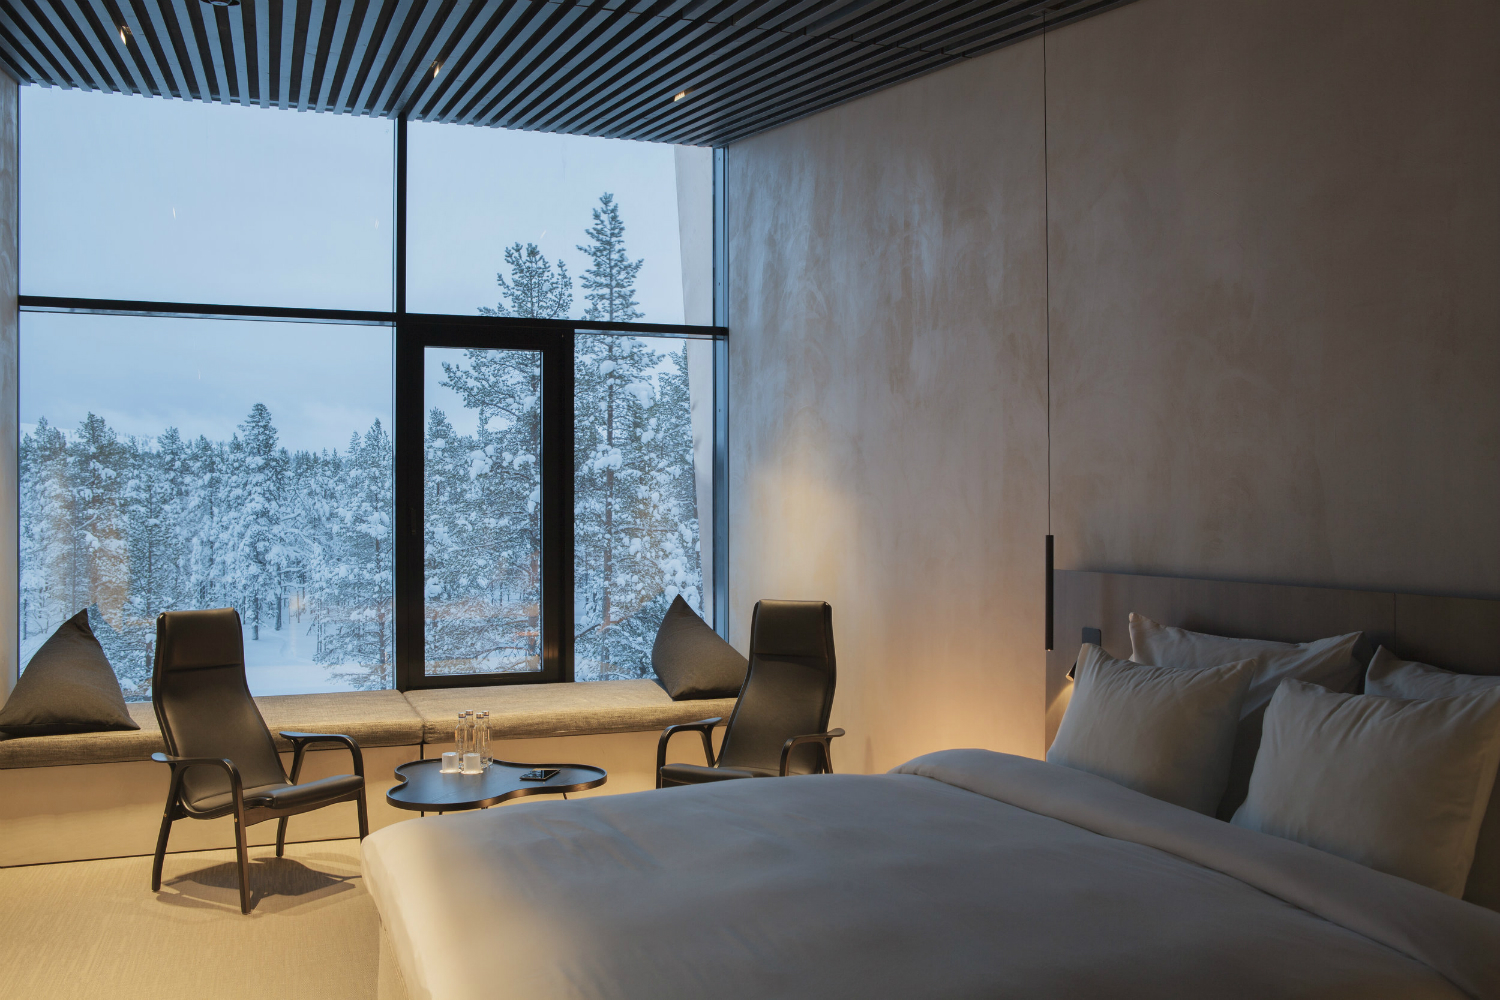 architecture javri lodge hotel finland bedroom interior 2